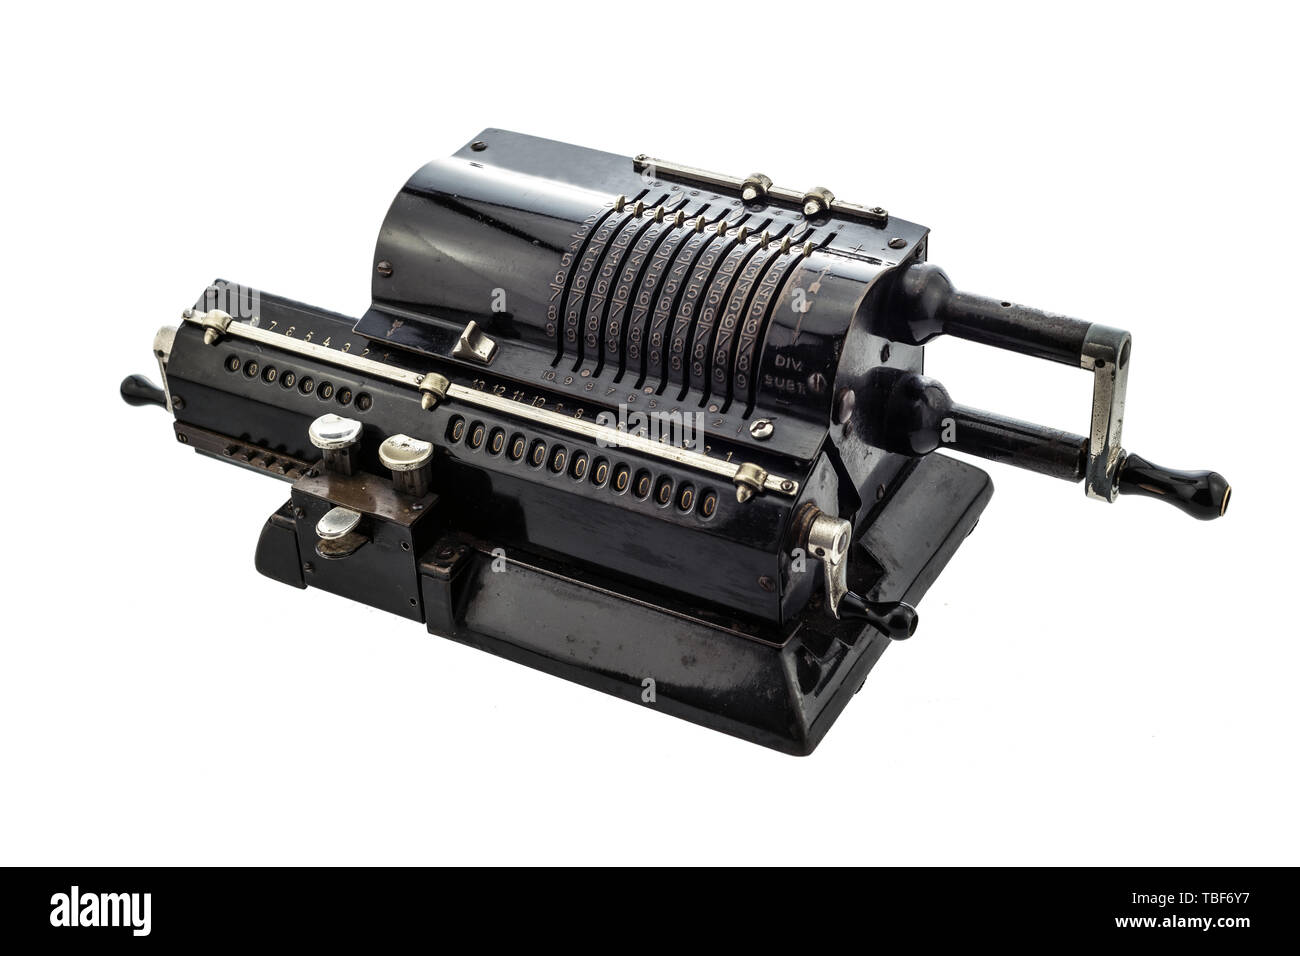 La girandola antico calcolatore meccanico.La macchina per calcolare, è un dispositivo meccanico utilizzato per eseguire automaticamente le operazioni di base di arithmeti Foto Stock